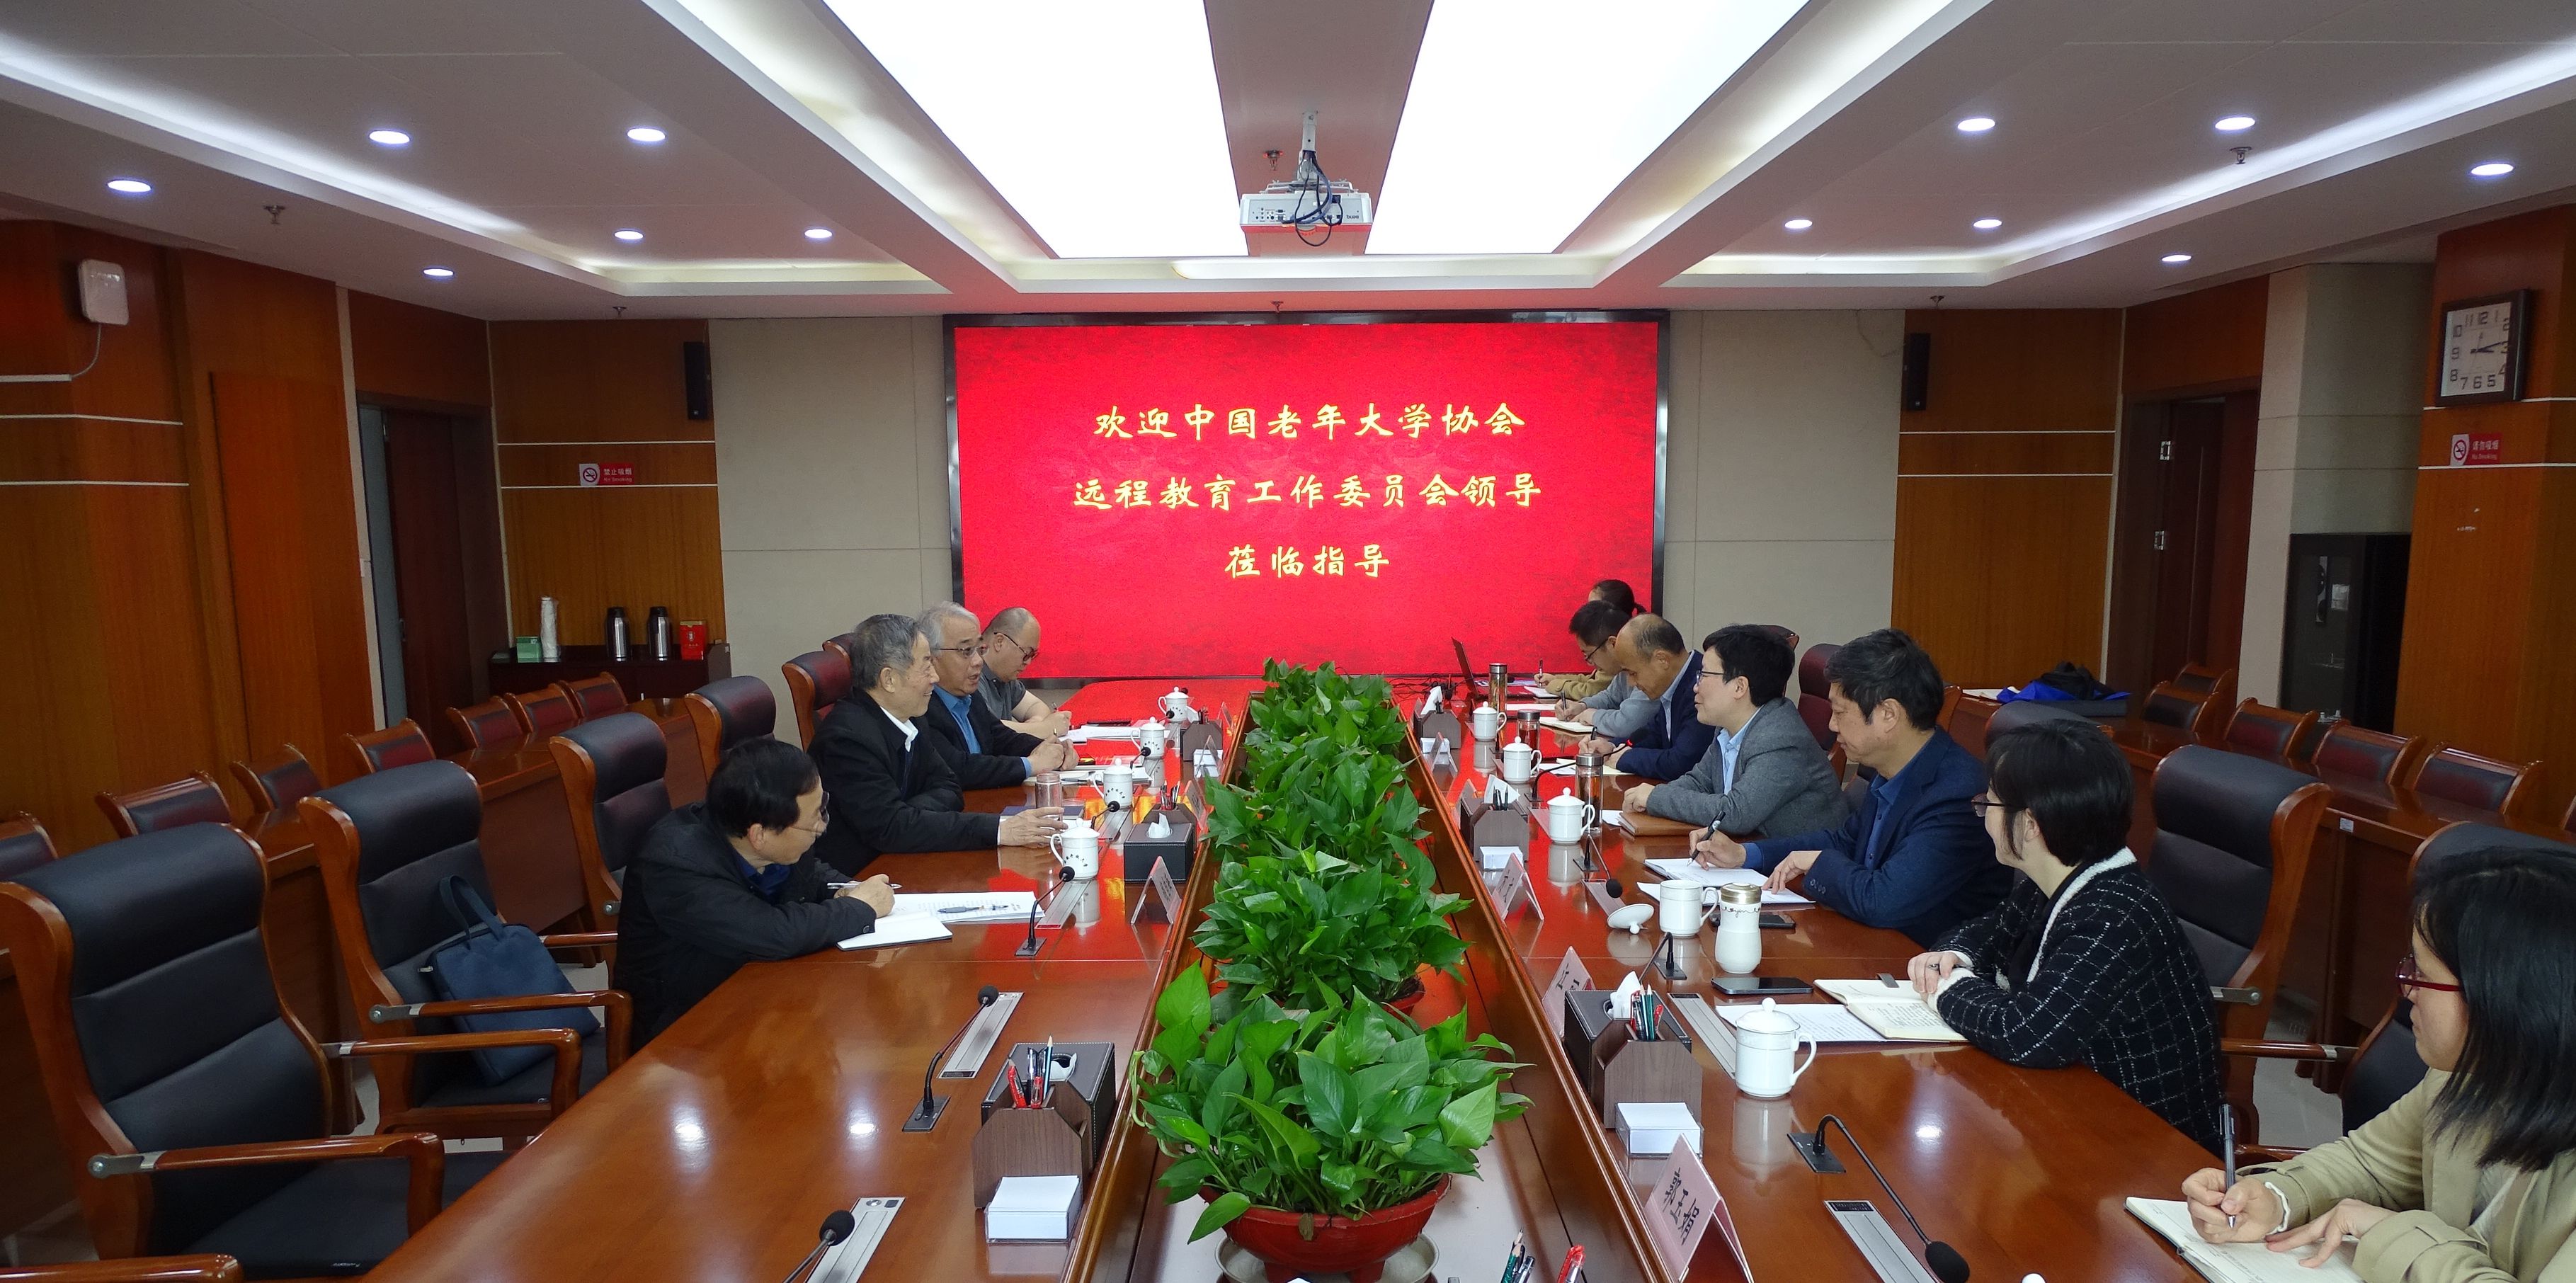 中国老年大学协会远程教育工作委员会一行在安徽调研